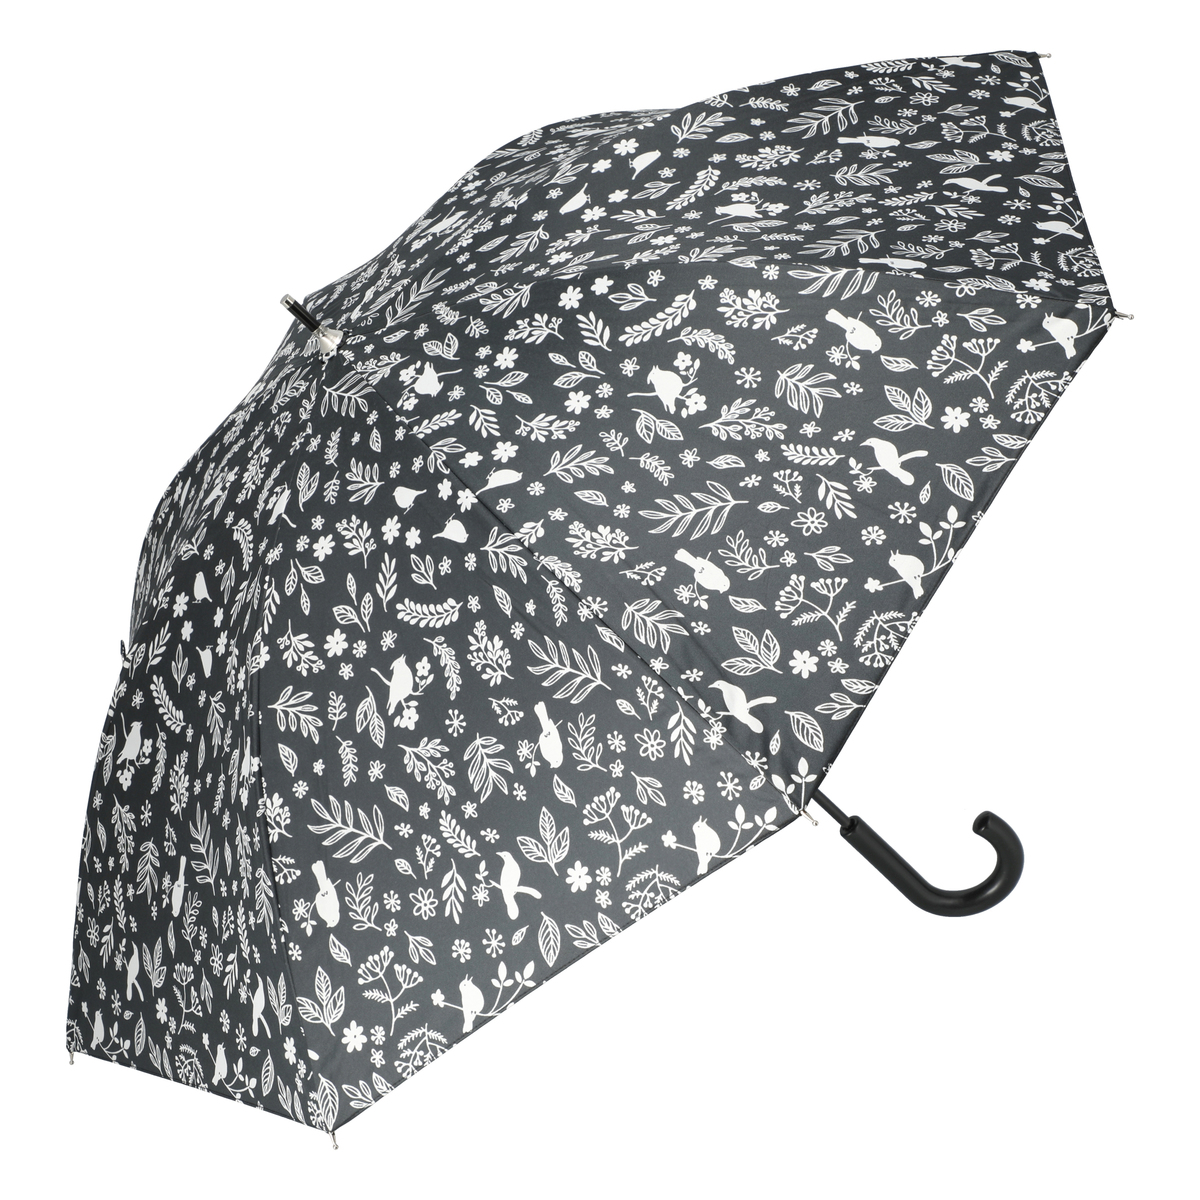  ルナジュメール UV+1級遮光+晴雨兼用 モノクロショート傘  バード柄ブラック